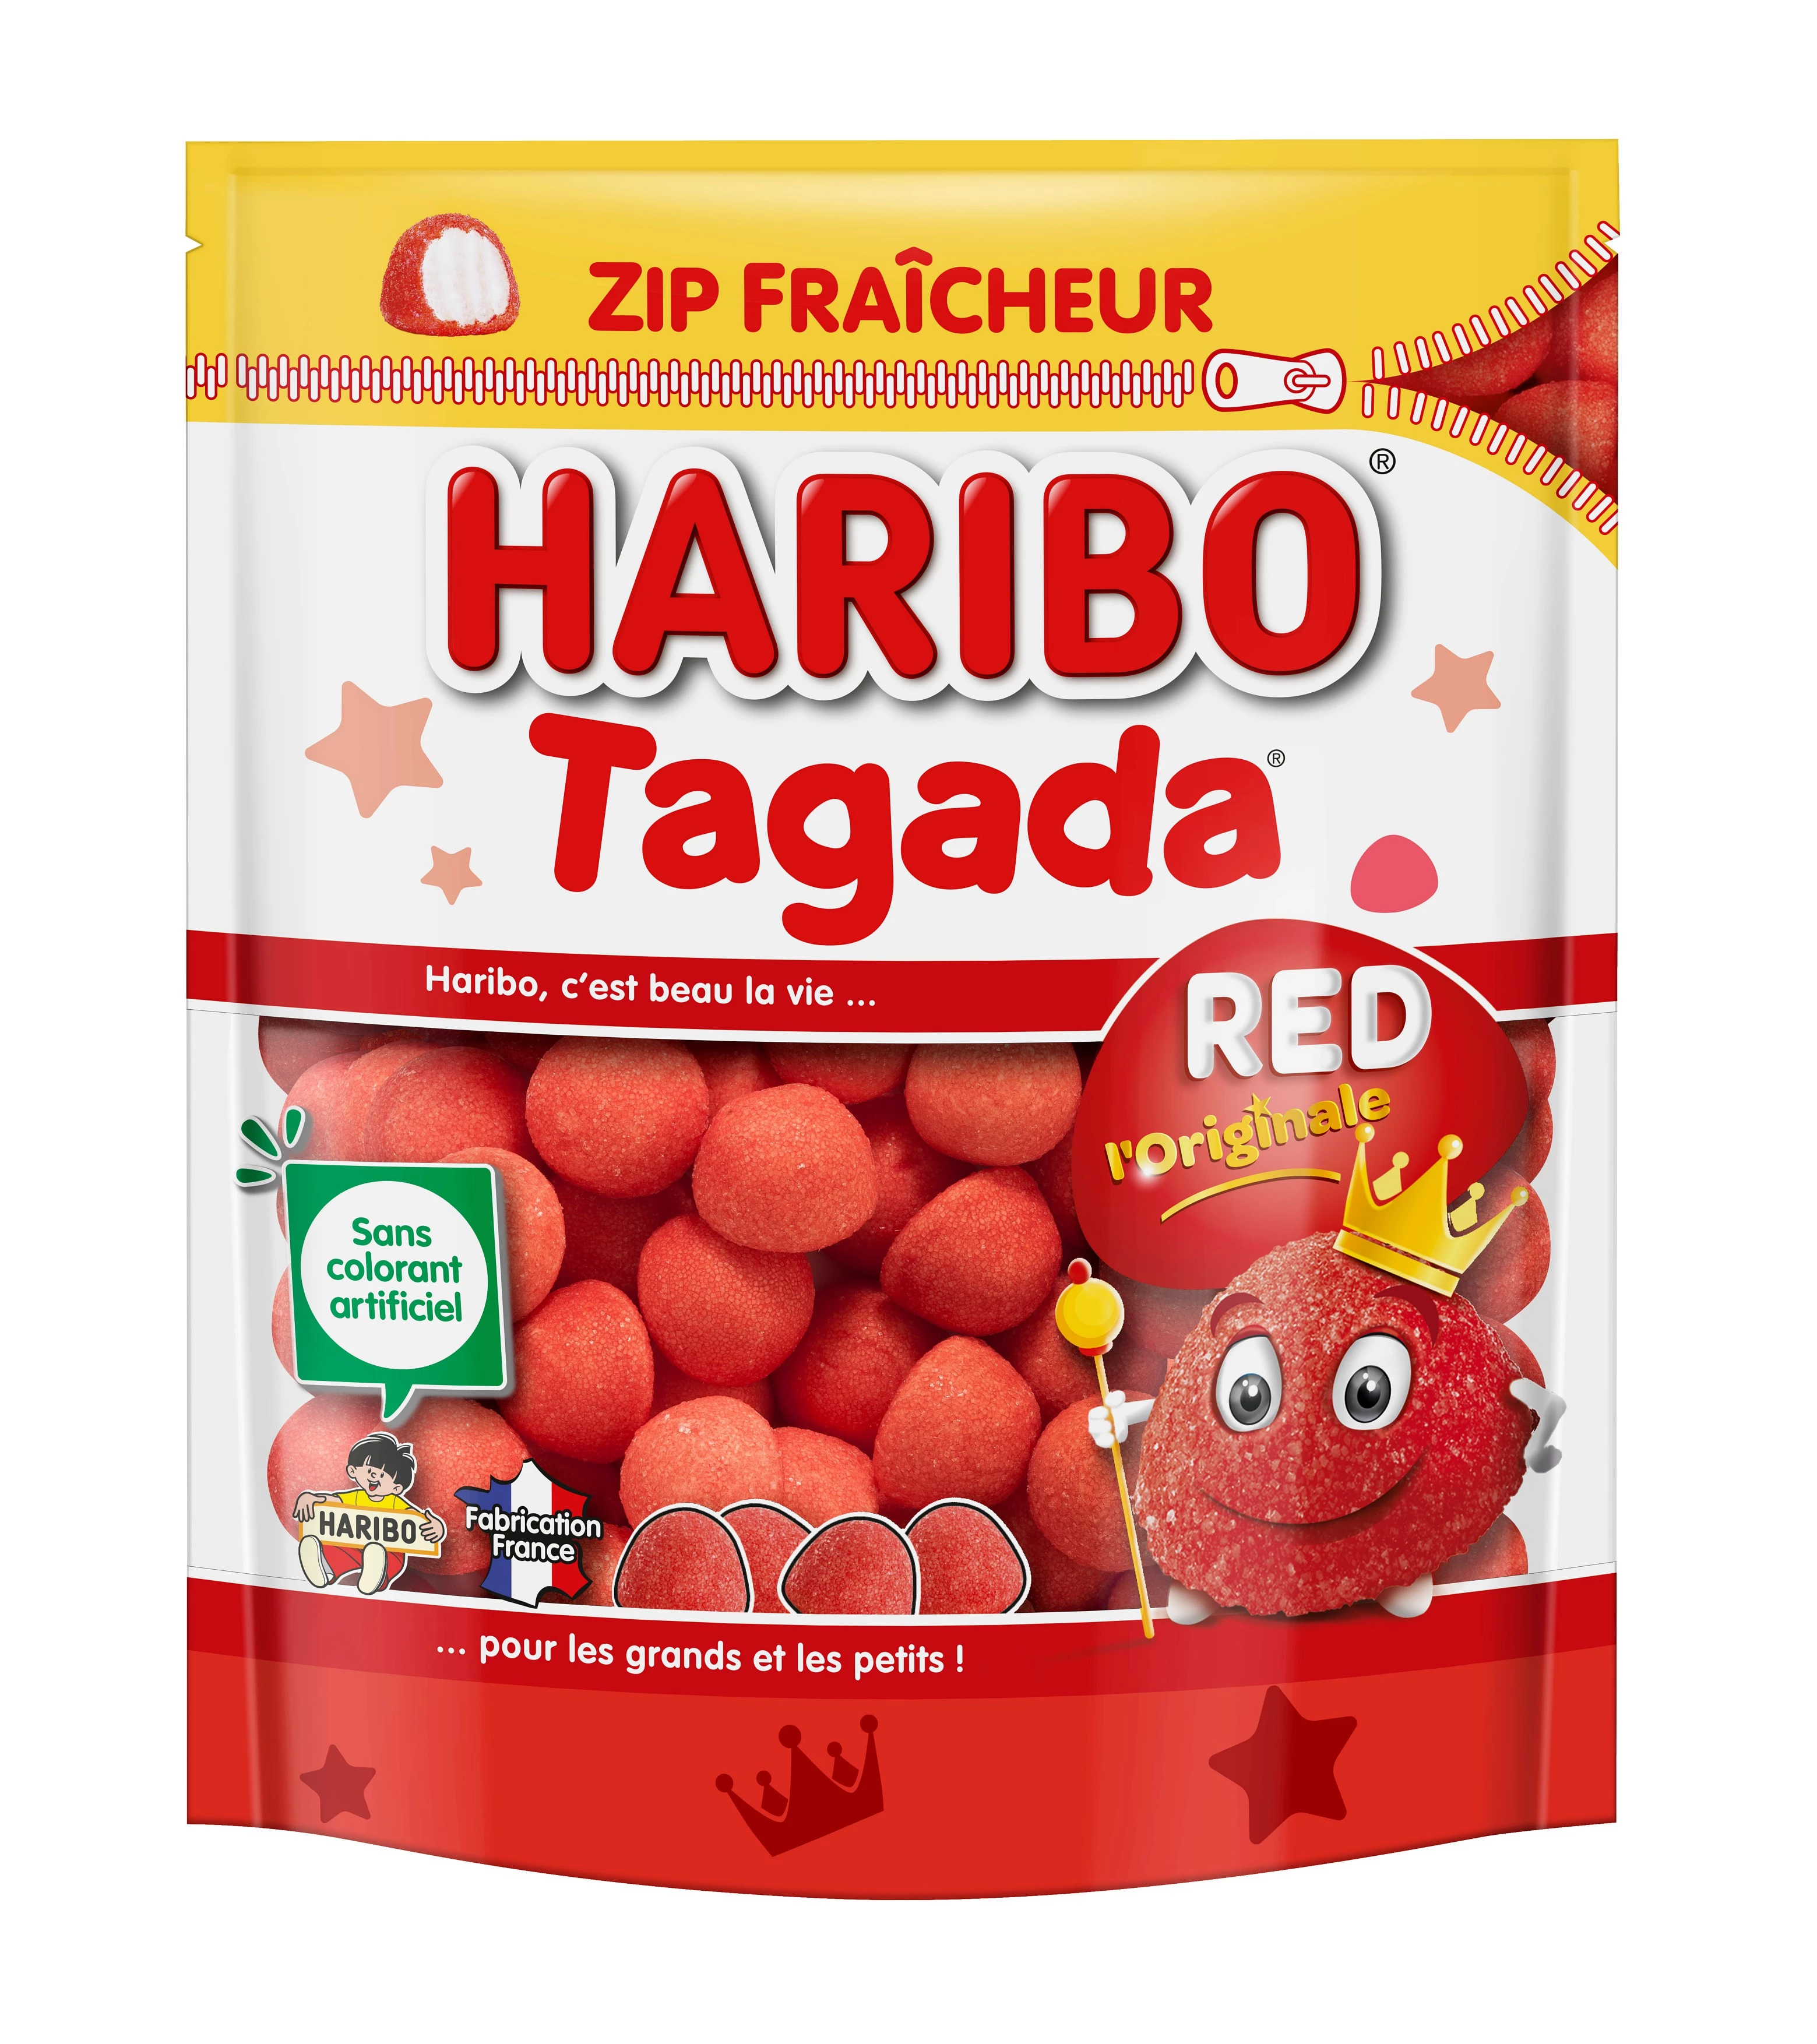 Bonbons Tagada zip fraicheur; 220g - HARIBO